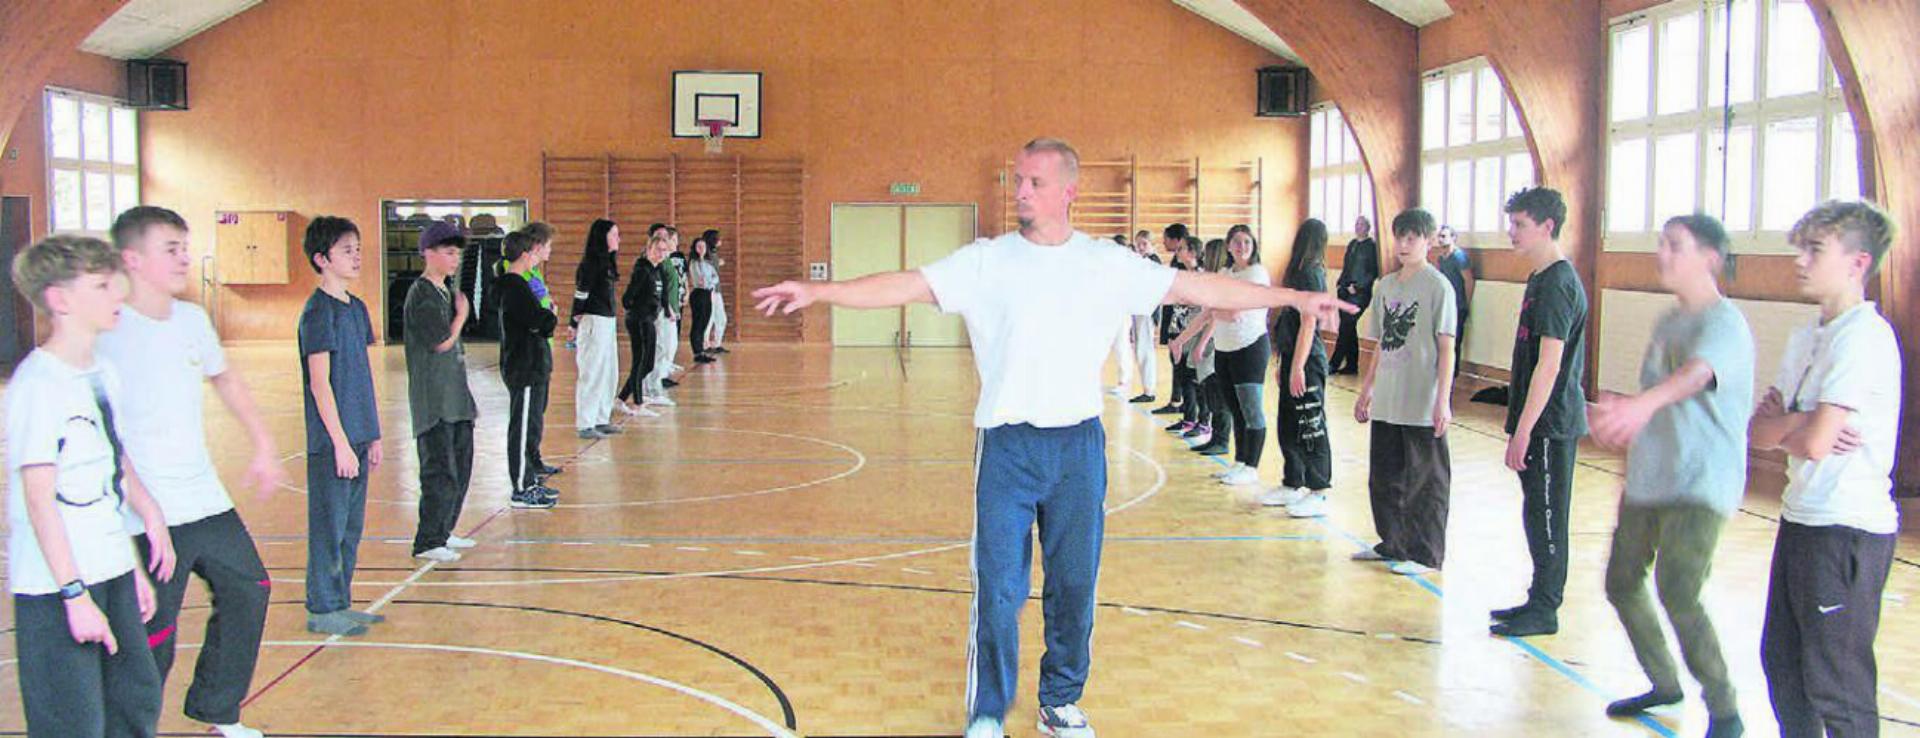 Björn Meier stellt die Schüler zum Breakdancebattle auf. Bilder: Vincenz Brunner